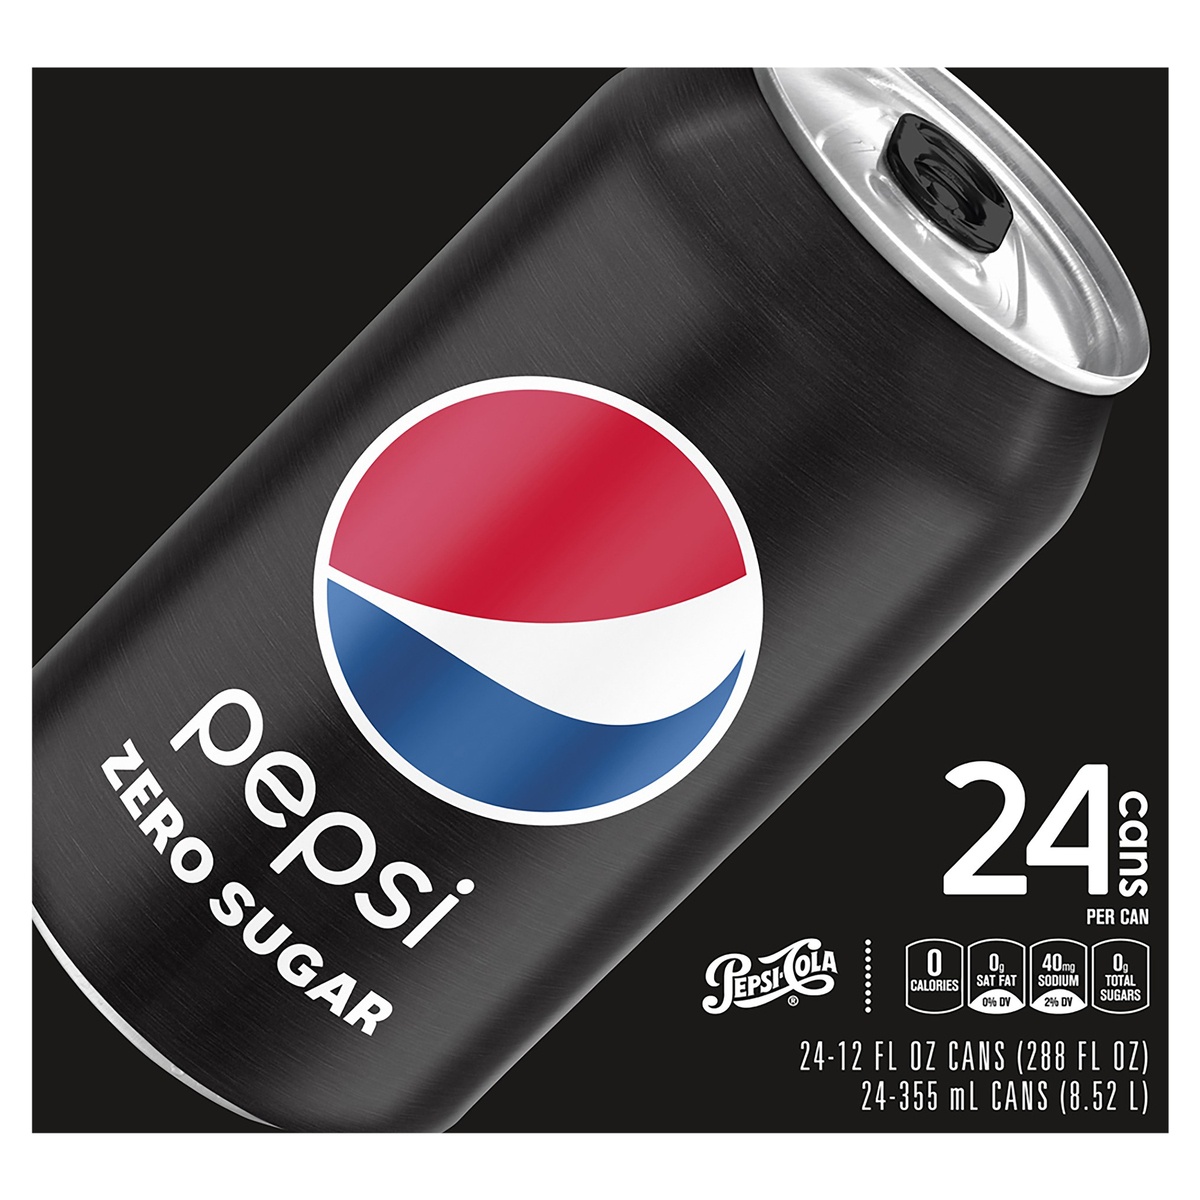 slide 1 of 1, Pepsi Zero Sugar Soda Cola 12 Fl Oz 24 Count Cans, 24 ct; 12 fl oz